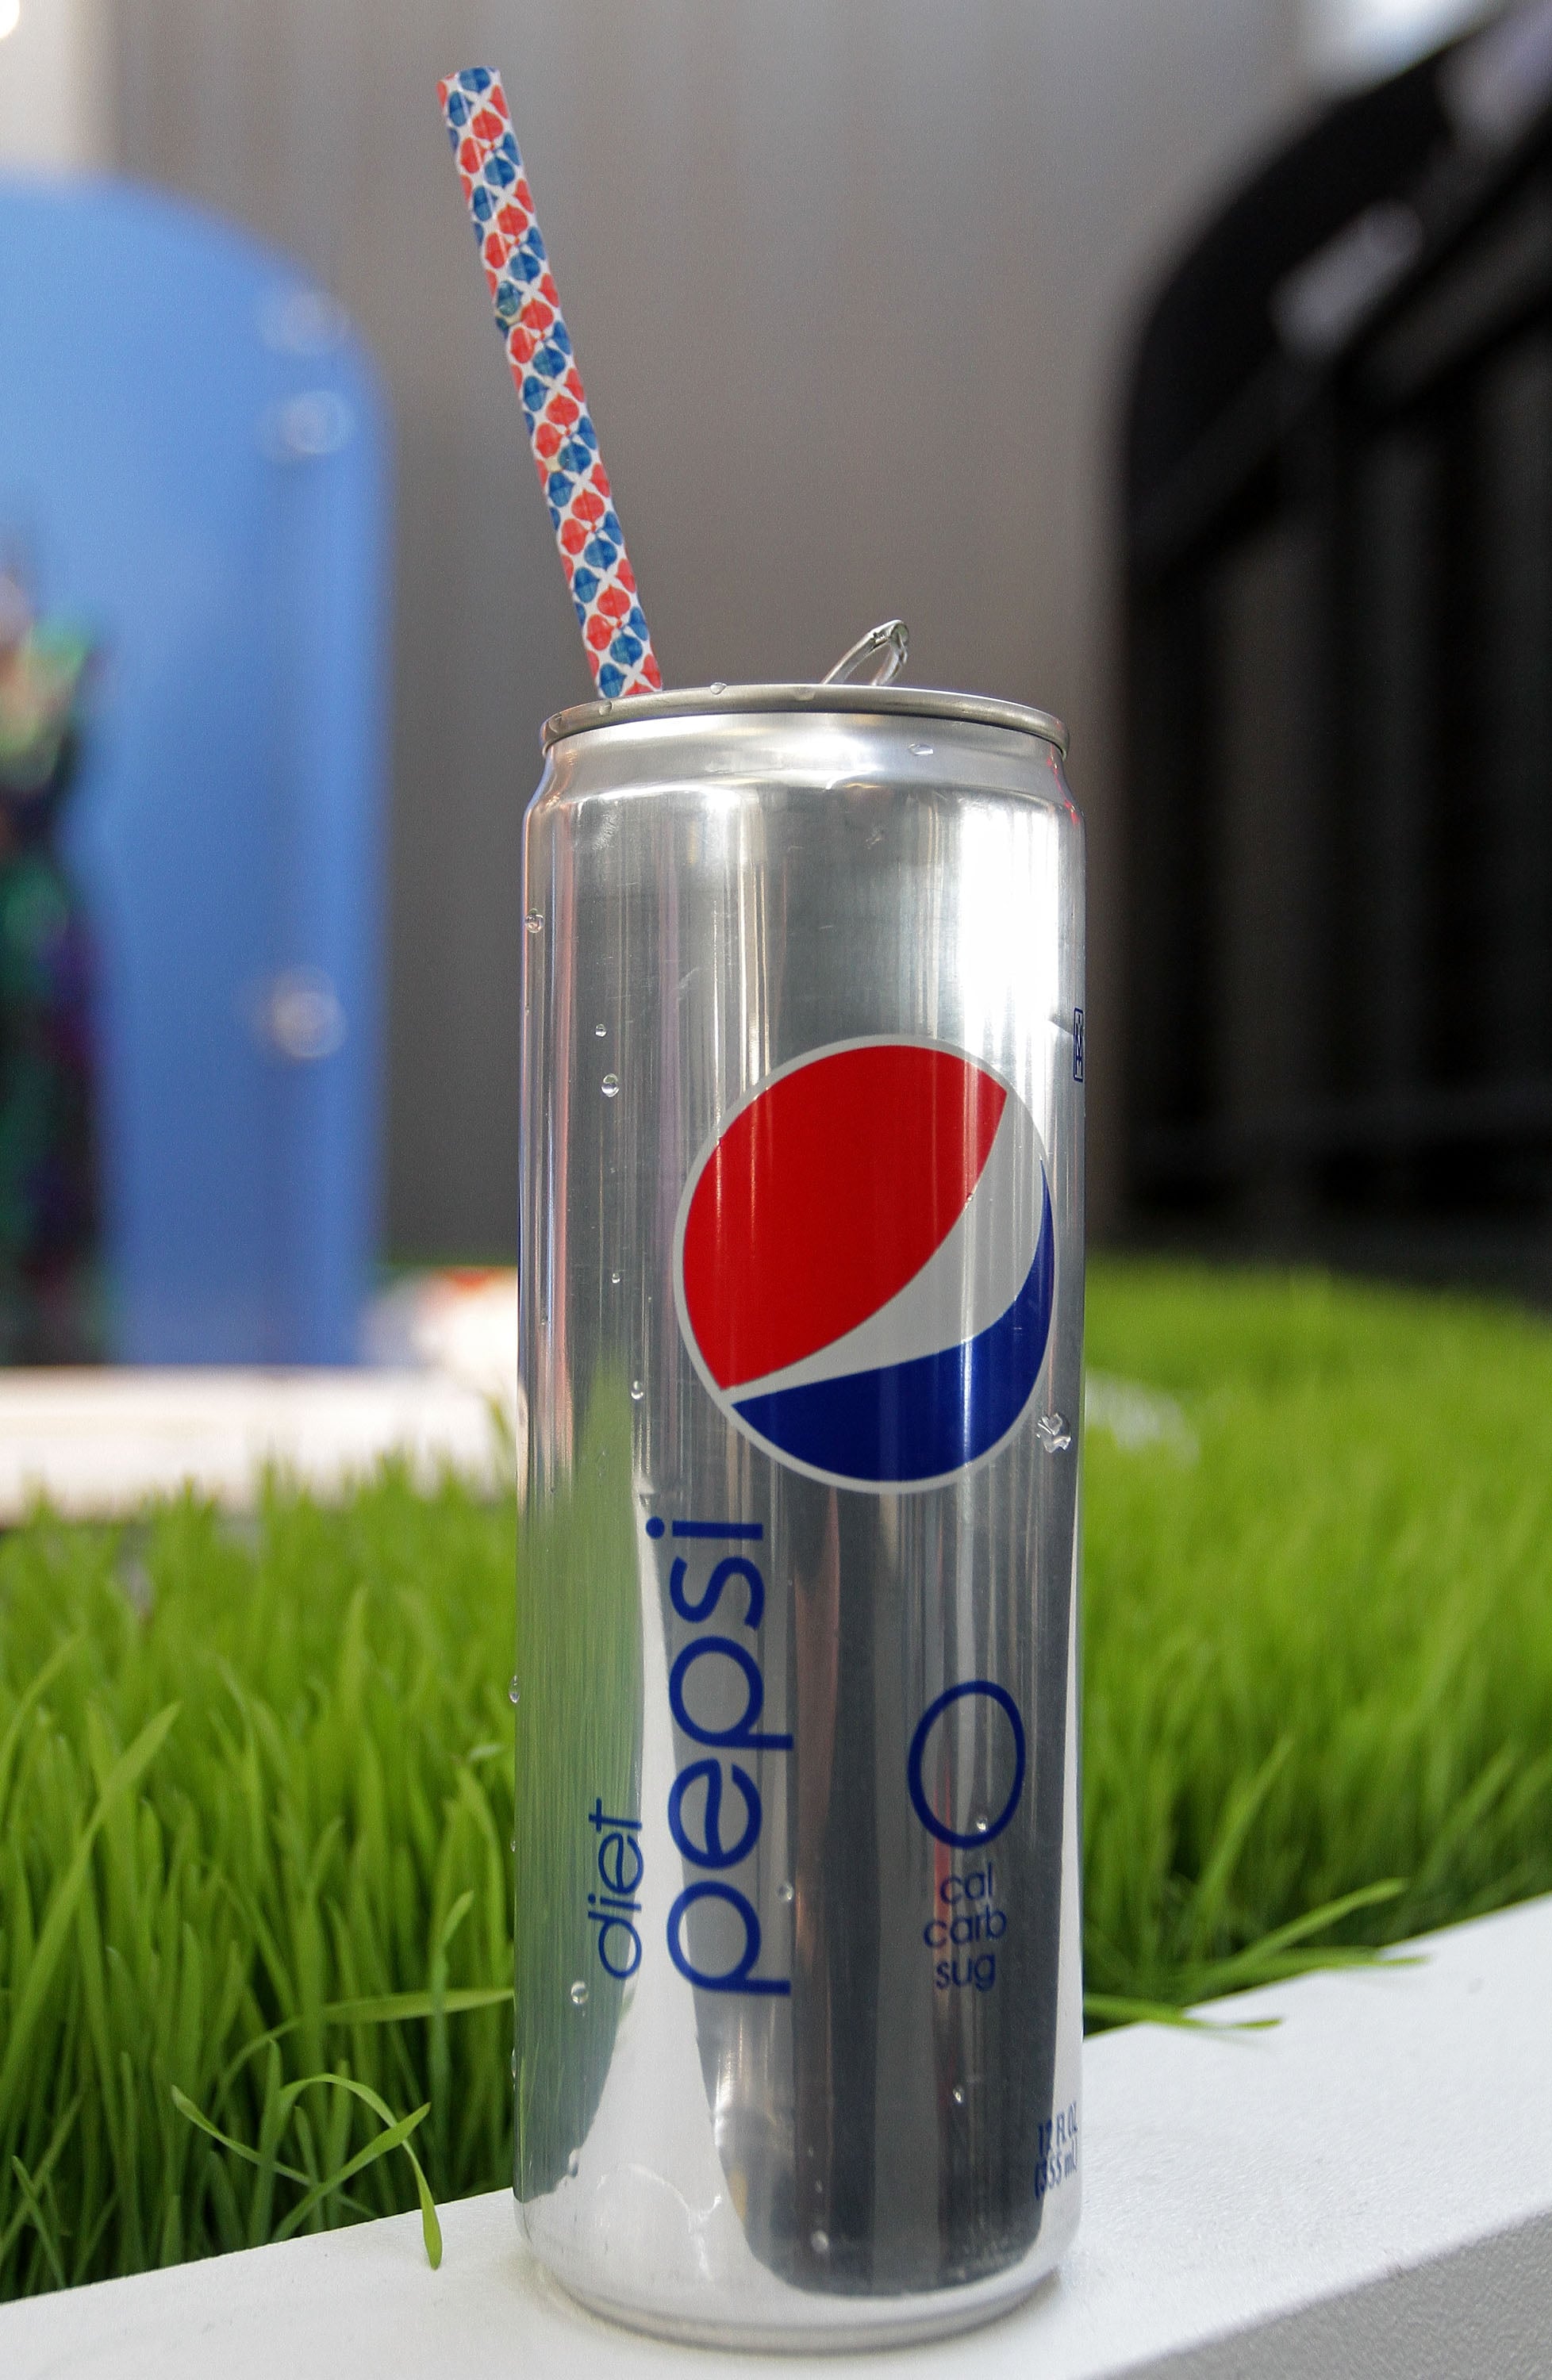 Diet Pepsi brings back aspartame